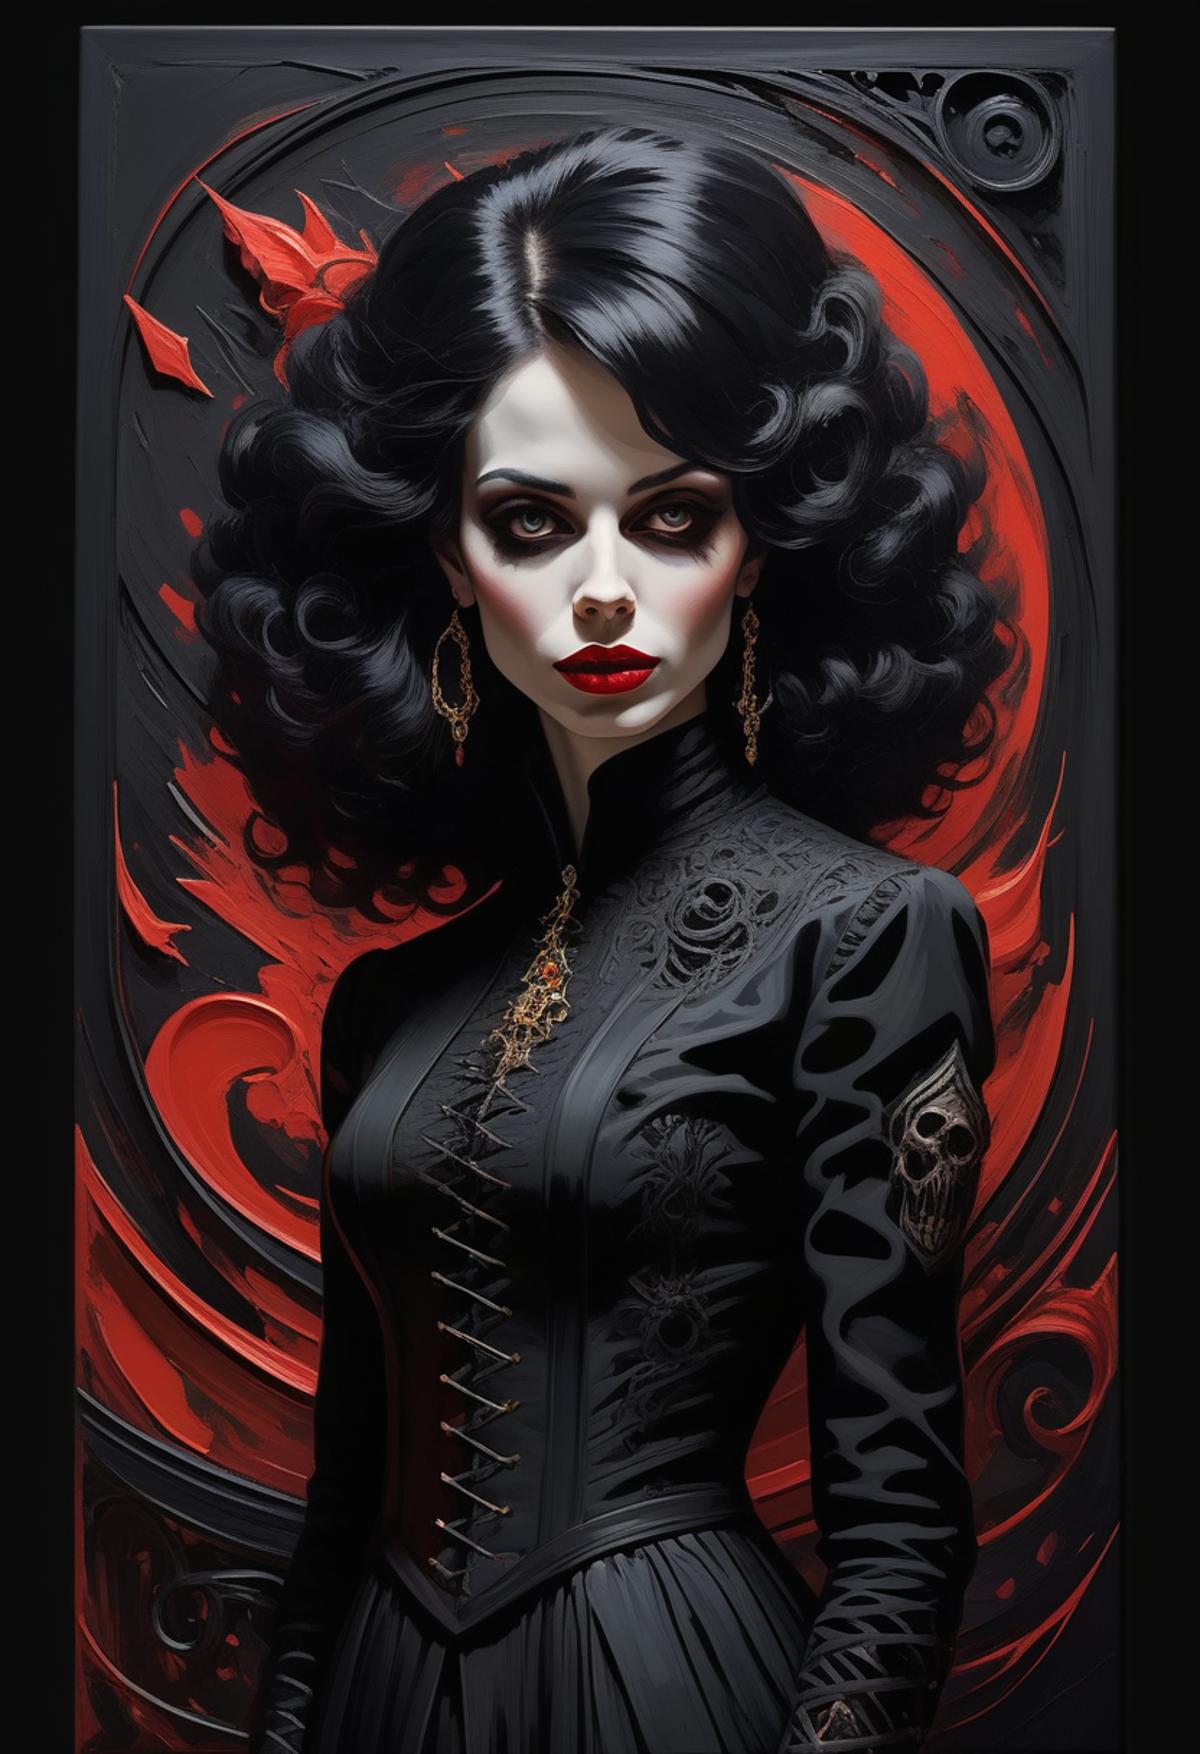 Vampire the Masquerade Aesthetics image by jiveabillion